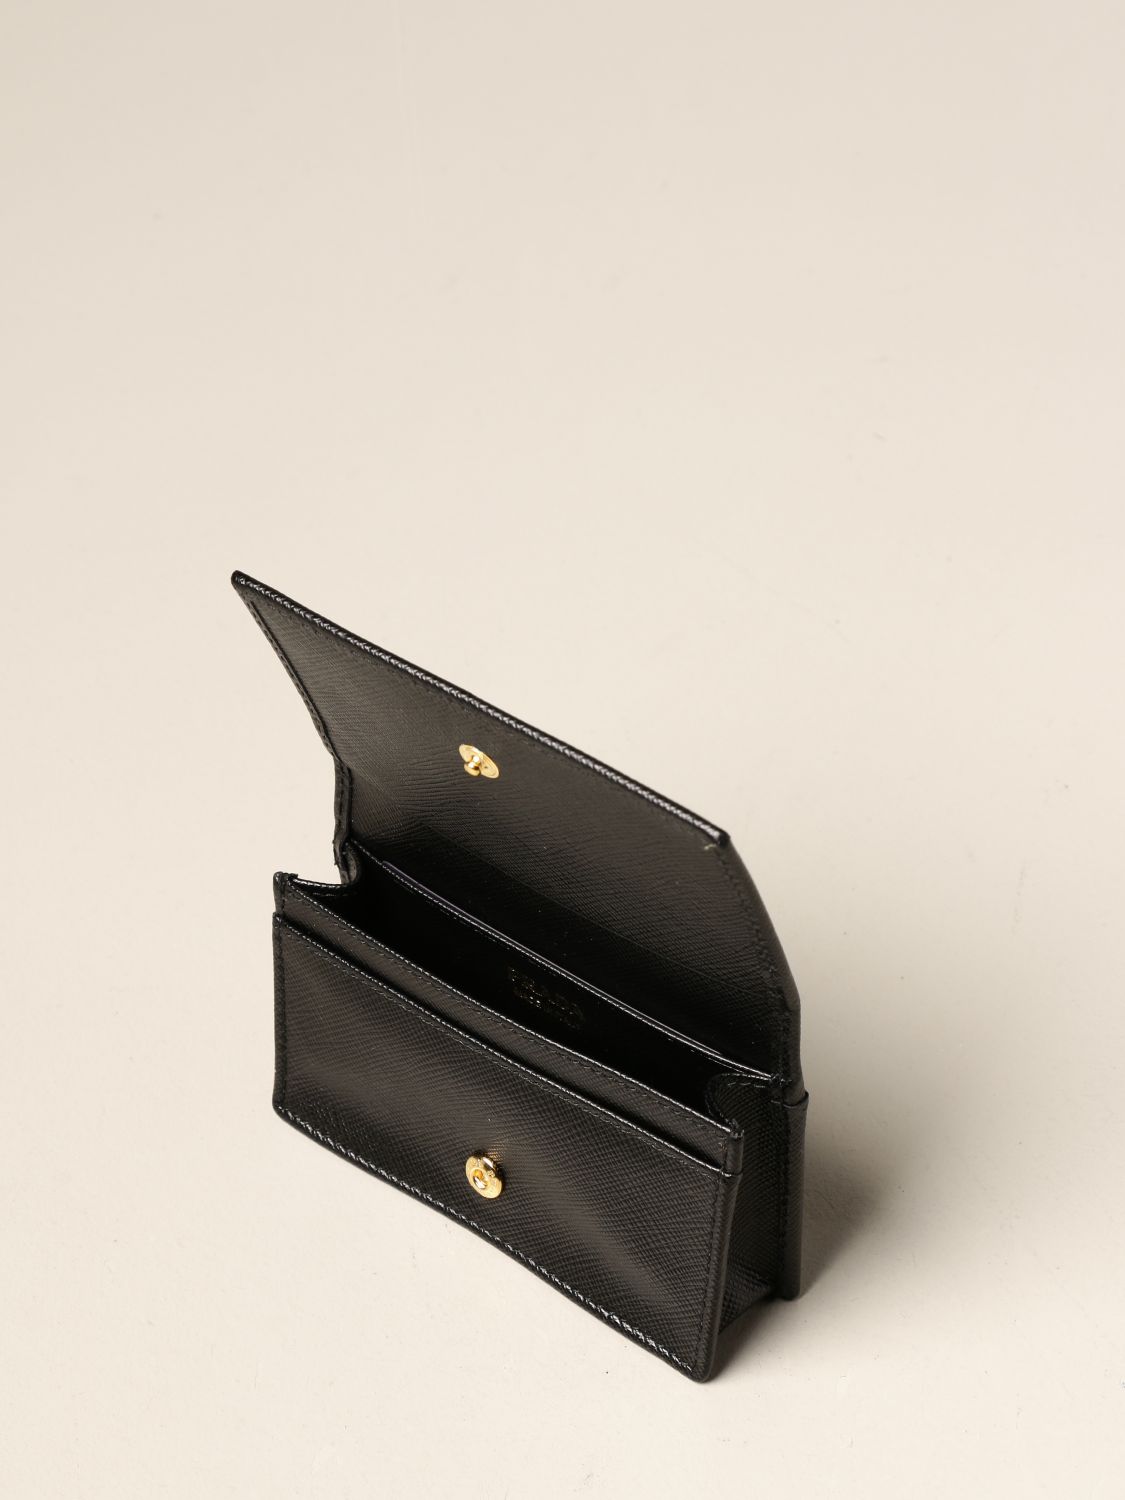 Prada Octagon Print Saffiano Credit Card Wallet In Black